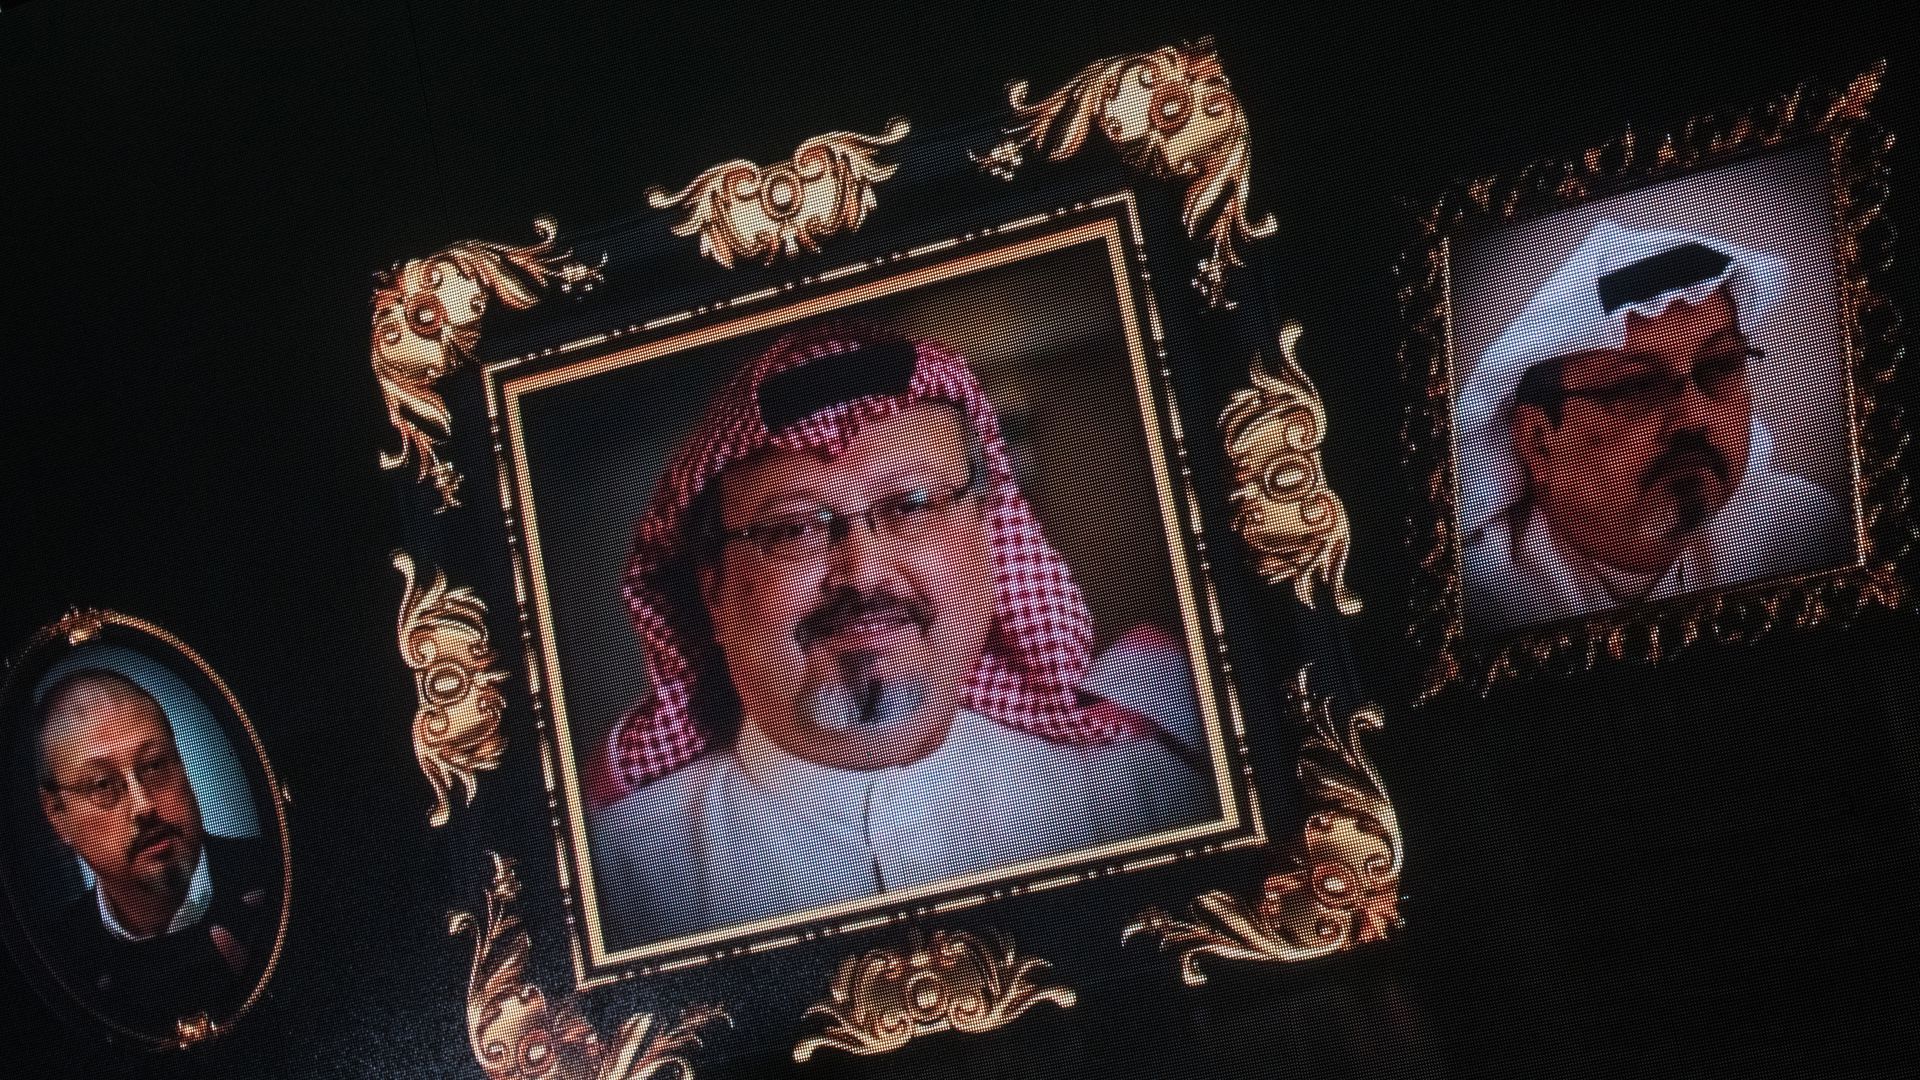 Picture of murdered journalist Jamal Khashoggi